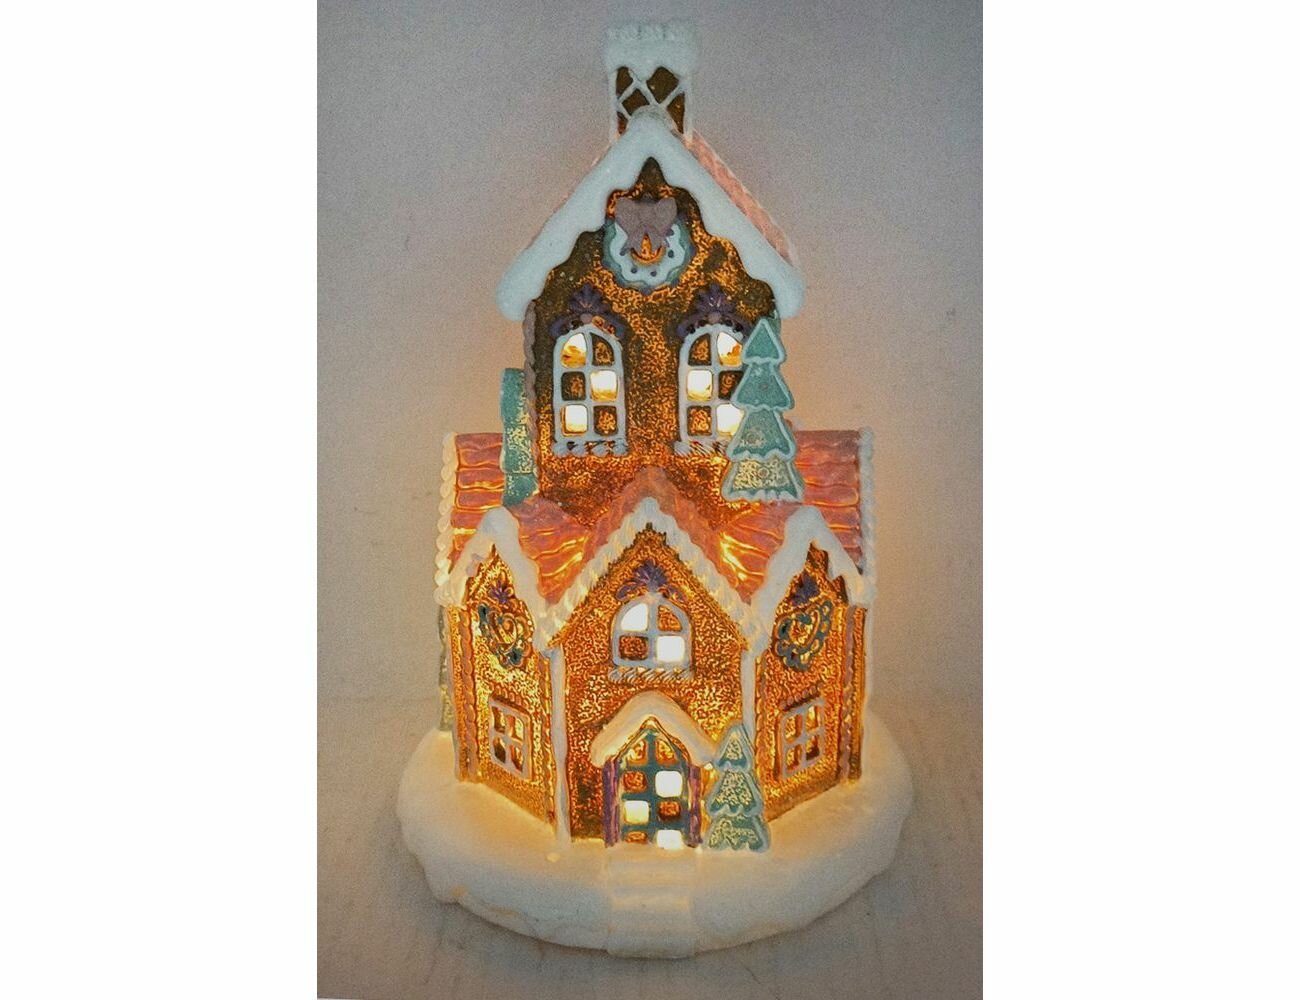 Светящаяся декоративная композиция домик имбирной ФЕИ, полистоун, розово-коричневый, тёплые белые LED-огни, 23х15 см, Due Esse Christmas XNA22016131-1